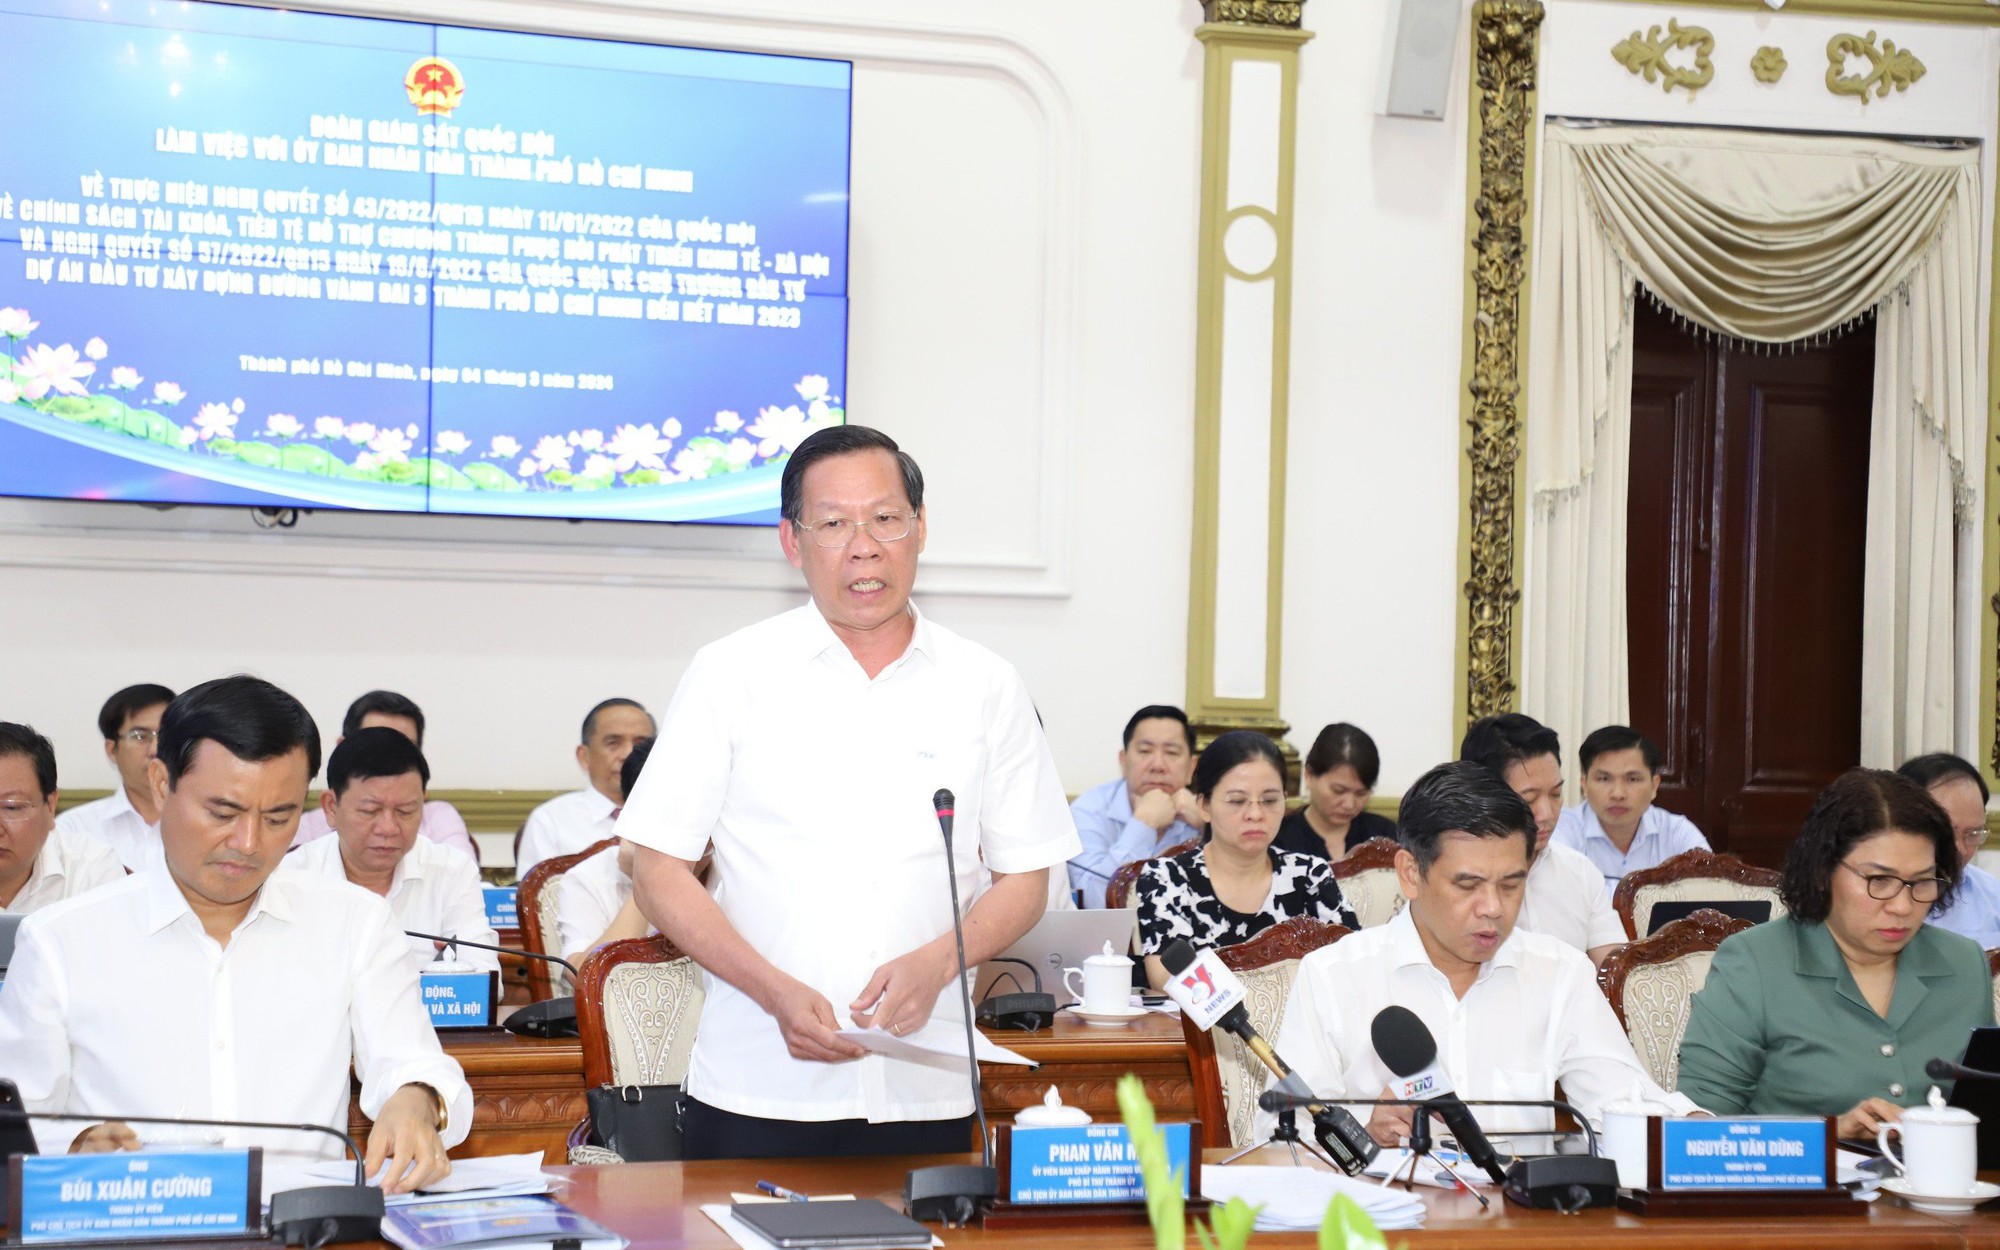 Chủ tịch Phan Văn Mãi: Nghị quyết về Vành đai 3 thực hiện rất thành công, hiệu quả